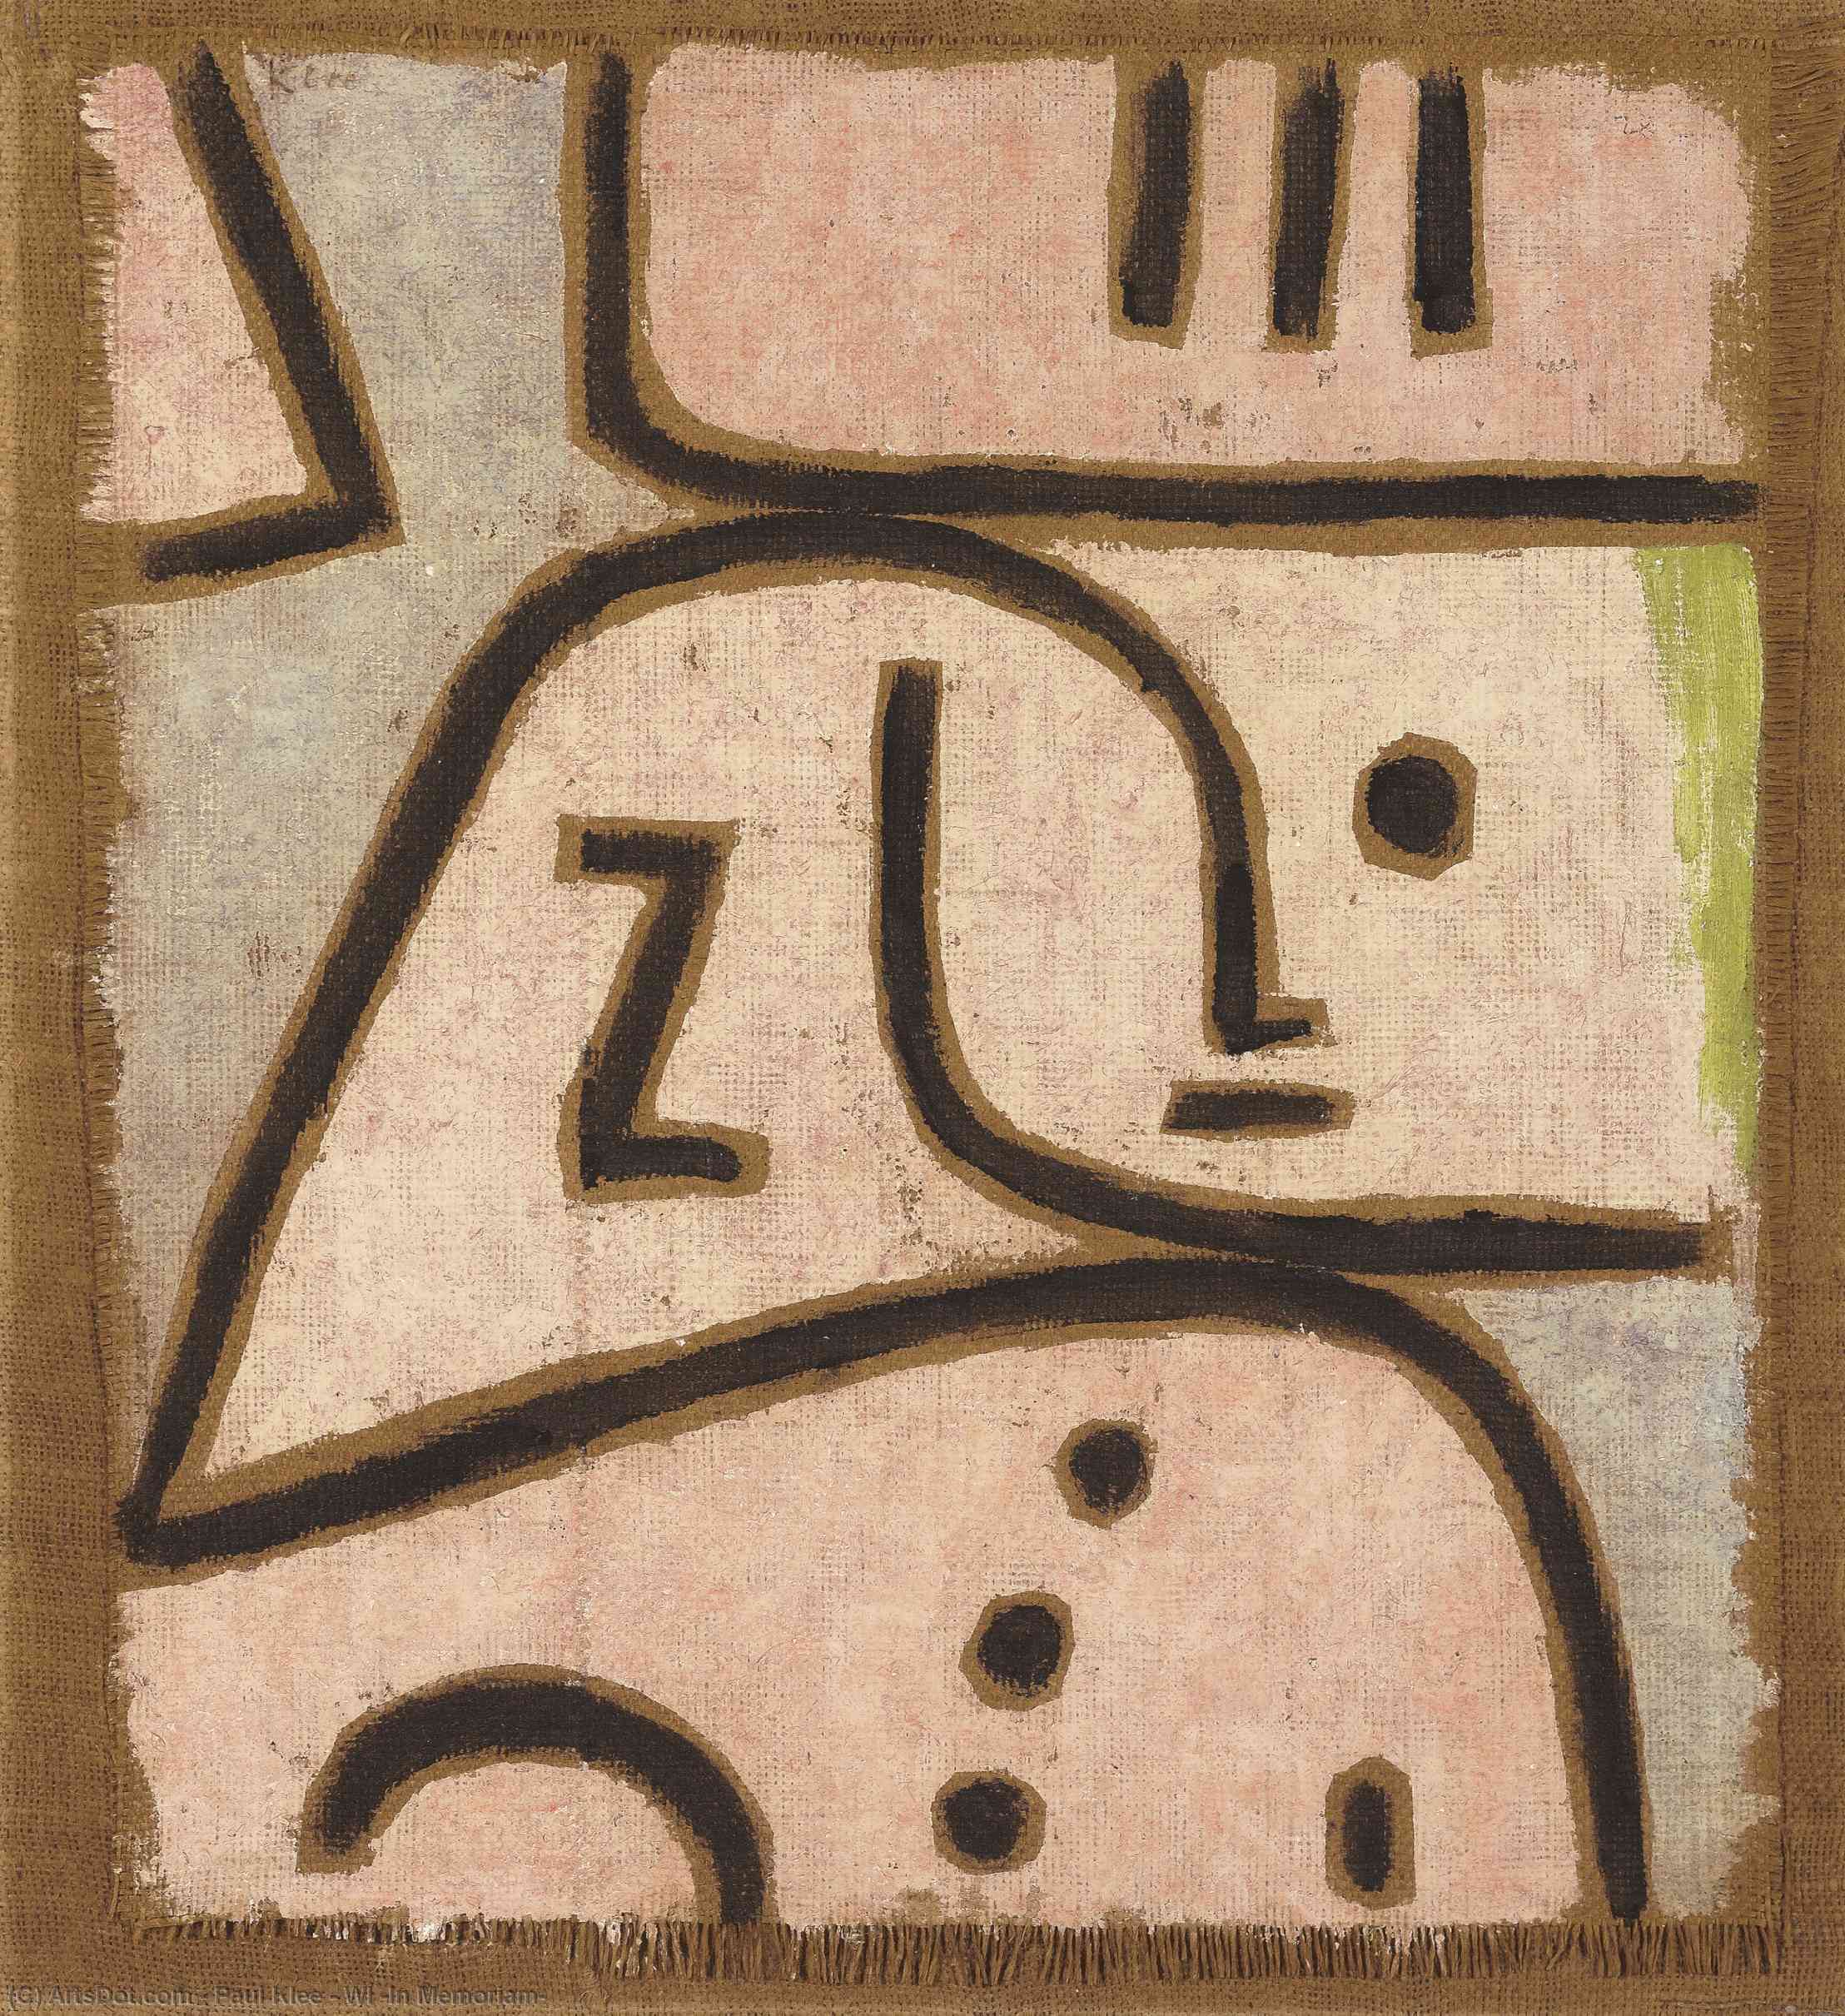 Wikoo.org - موسوعة الفنون الجميلة - اللوحة، العمل الفني Paul Klee - WI (In Memoriam)